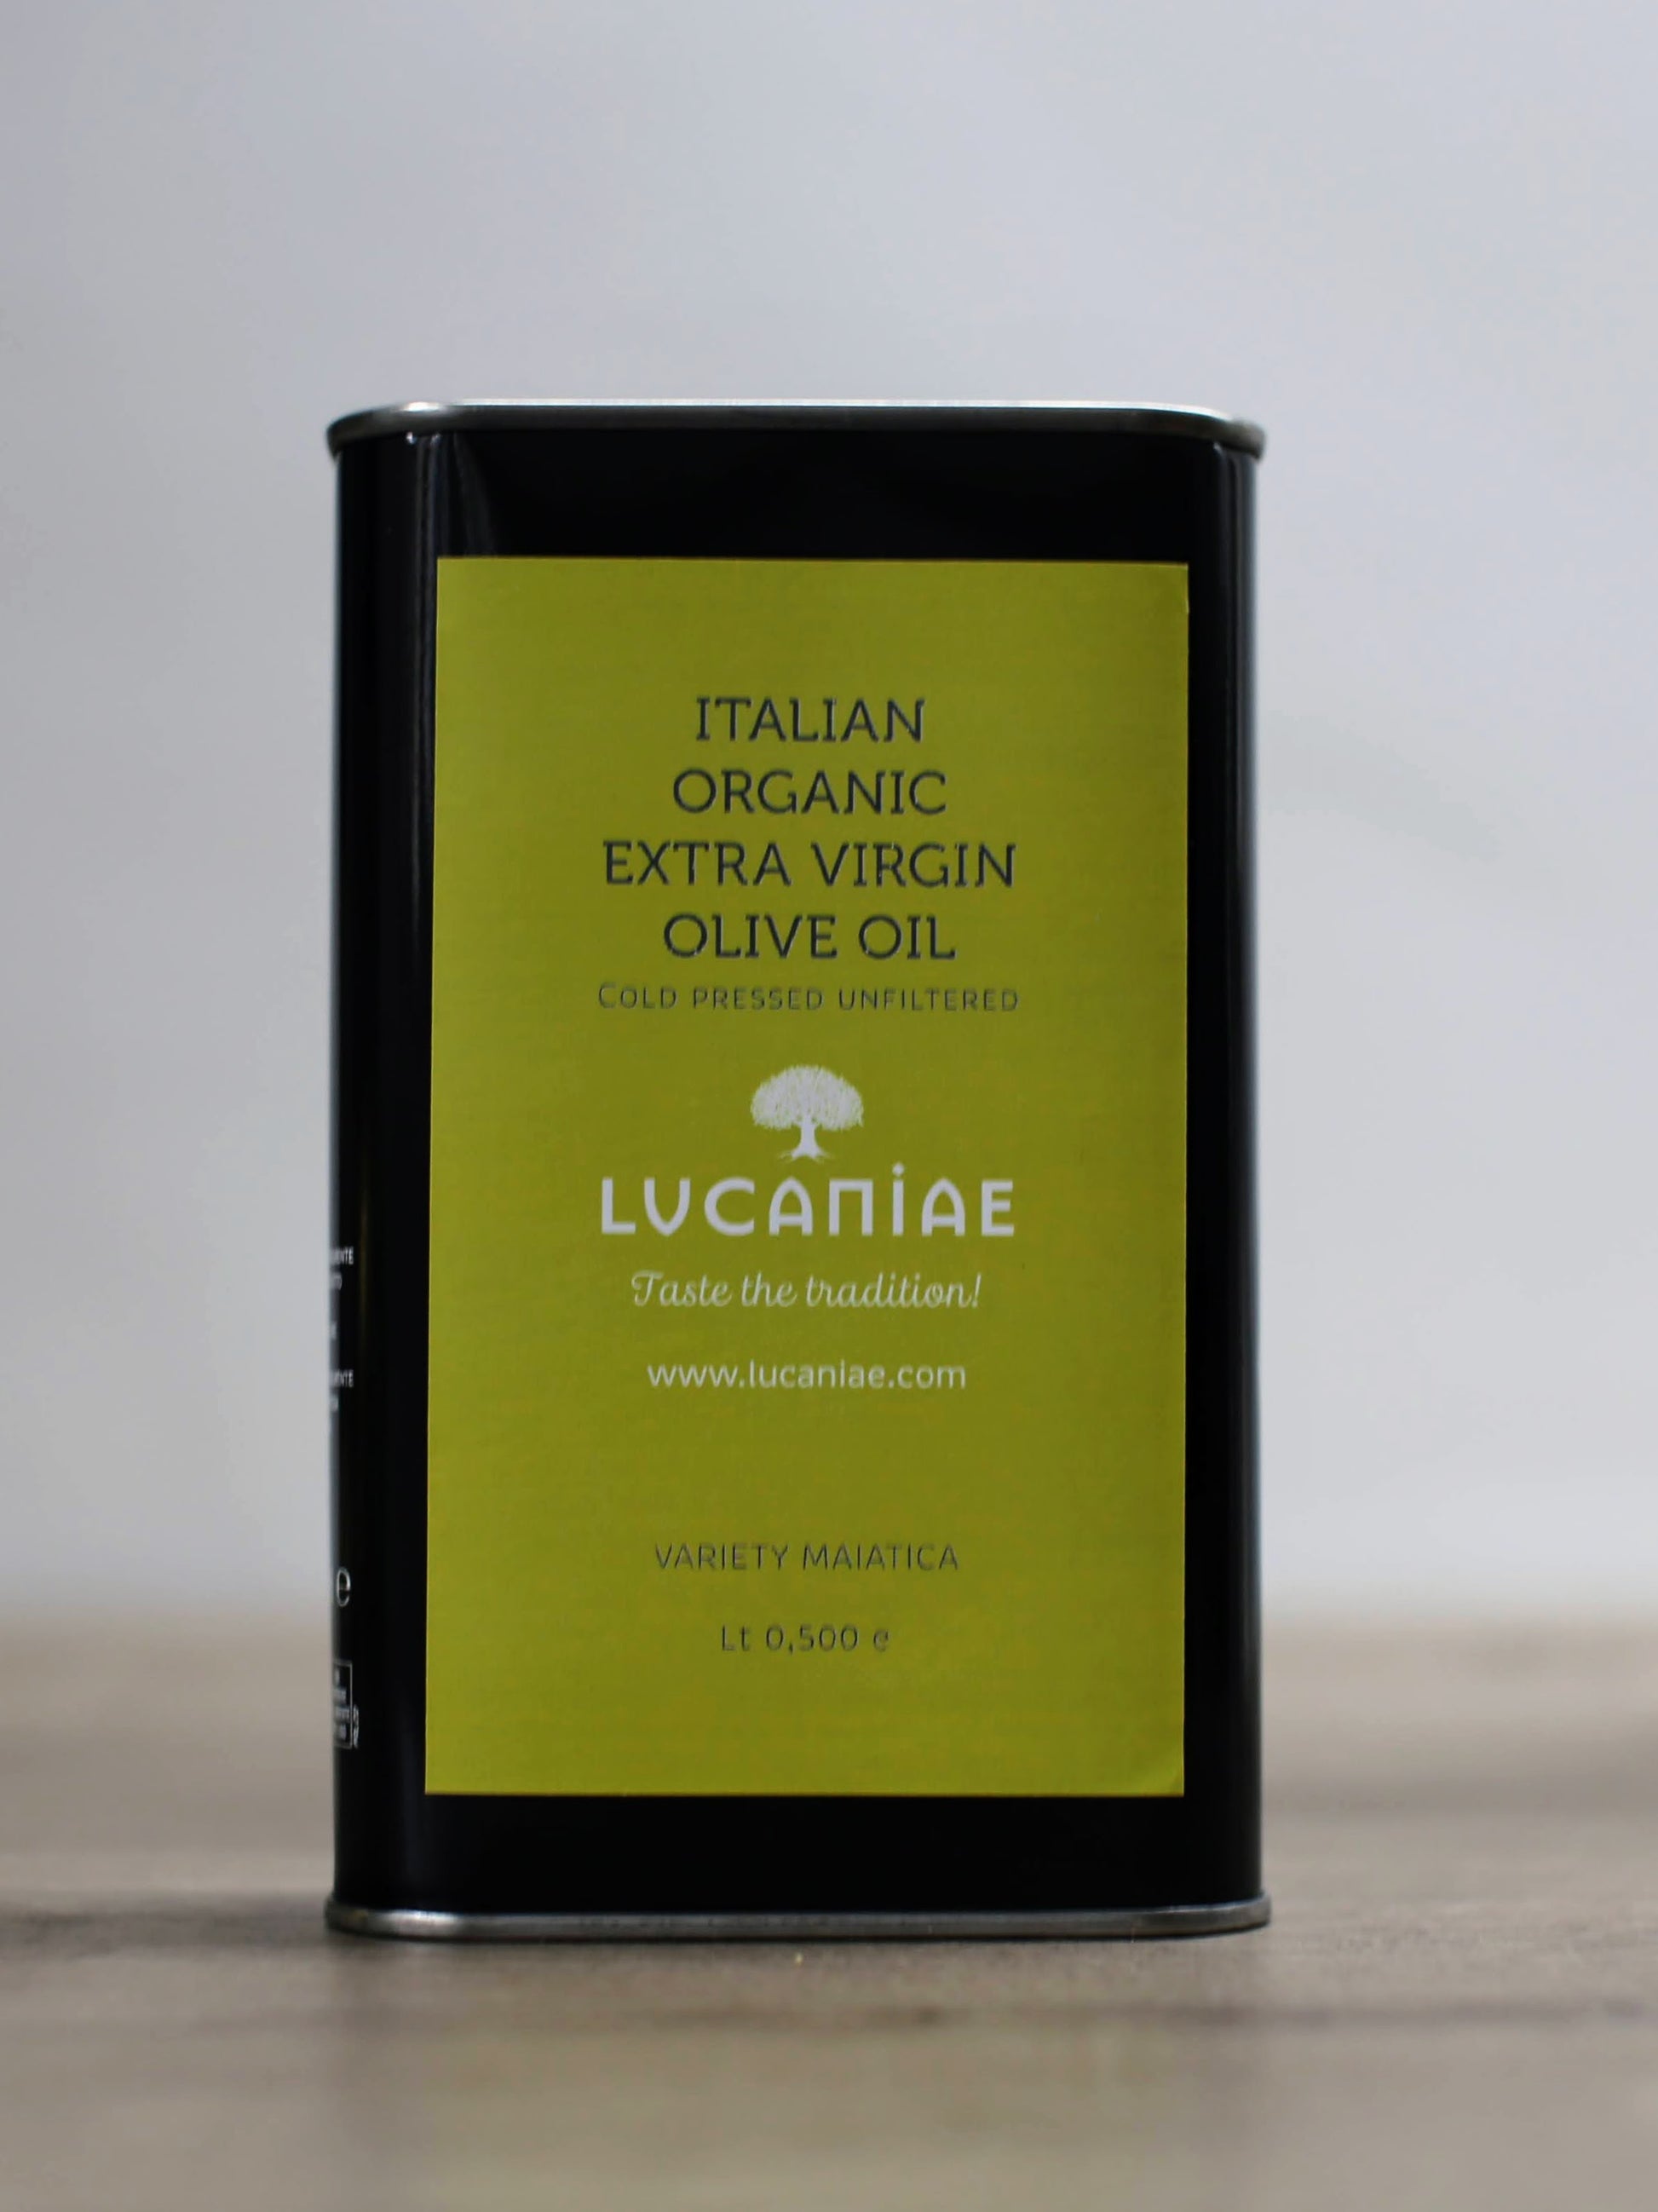 Lucaniae extra virgin olive oil 0.5 liter tin